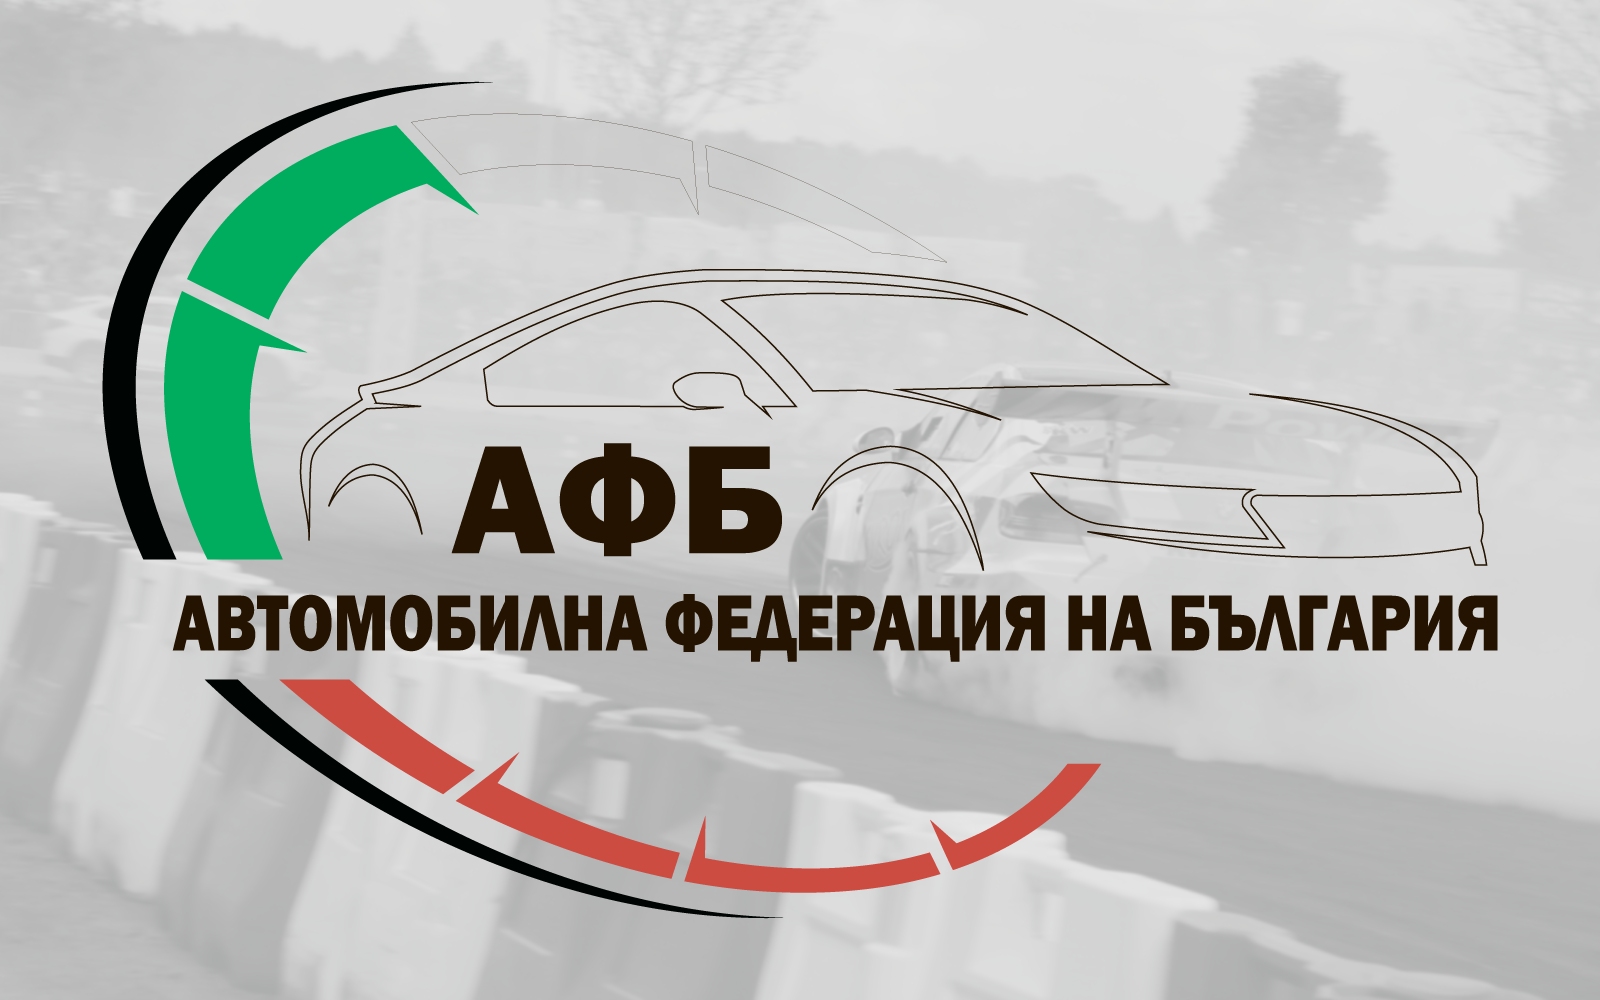 Този уикенд стартира сезон 2020 в автомобилния спорт в България,